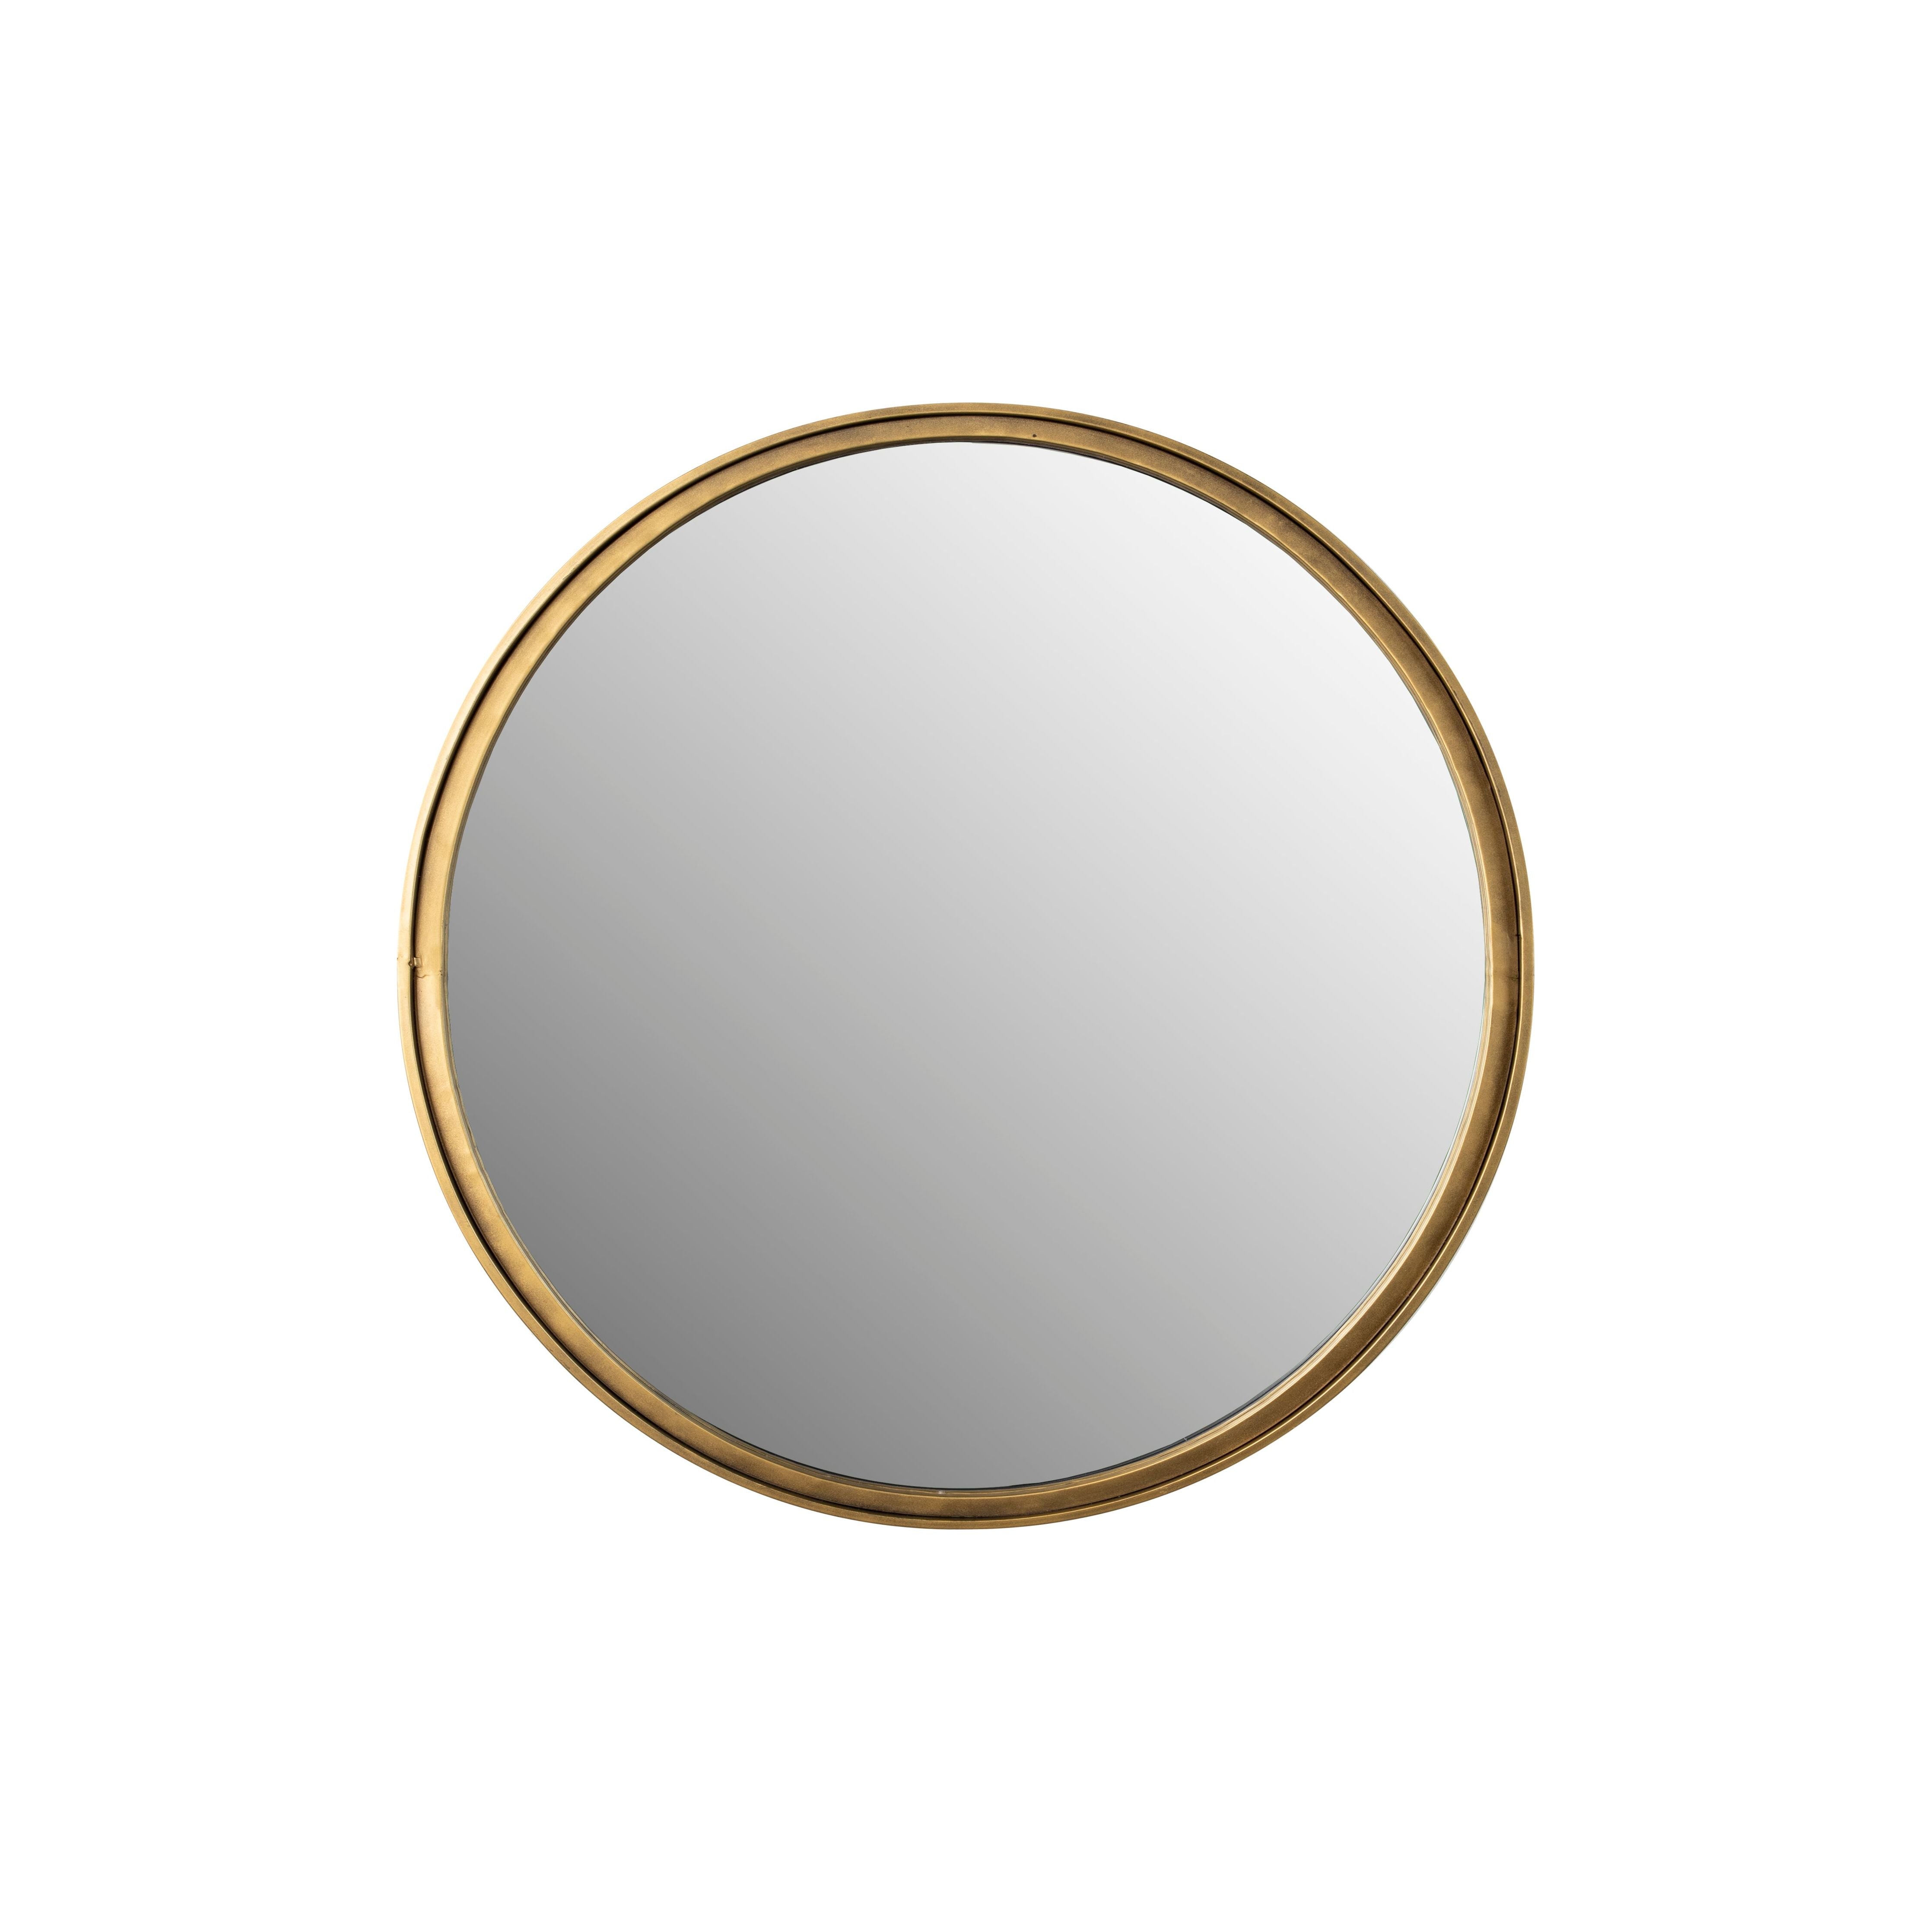 Mirror matz round antique brass